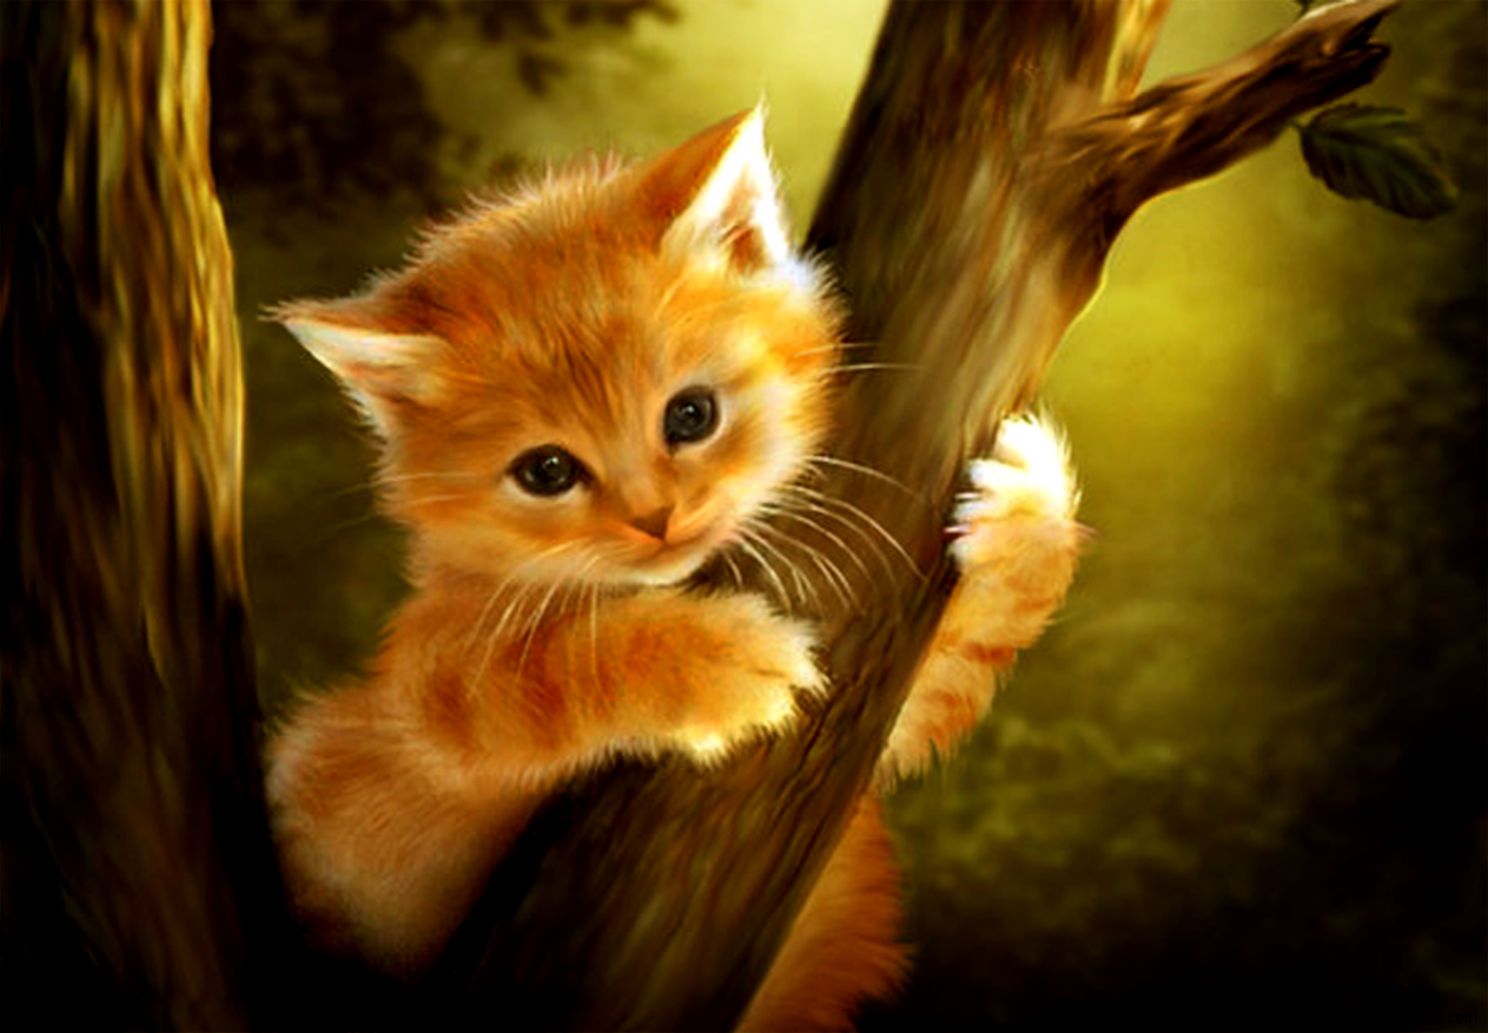 Wallpaper4u Kitten Up A Tree Ginger Cute Animal Art Fantasy Cat